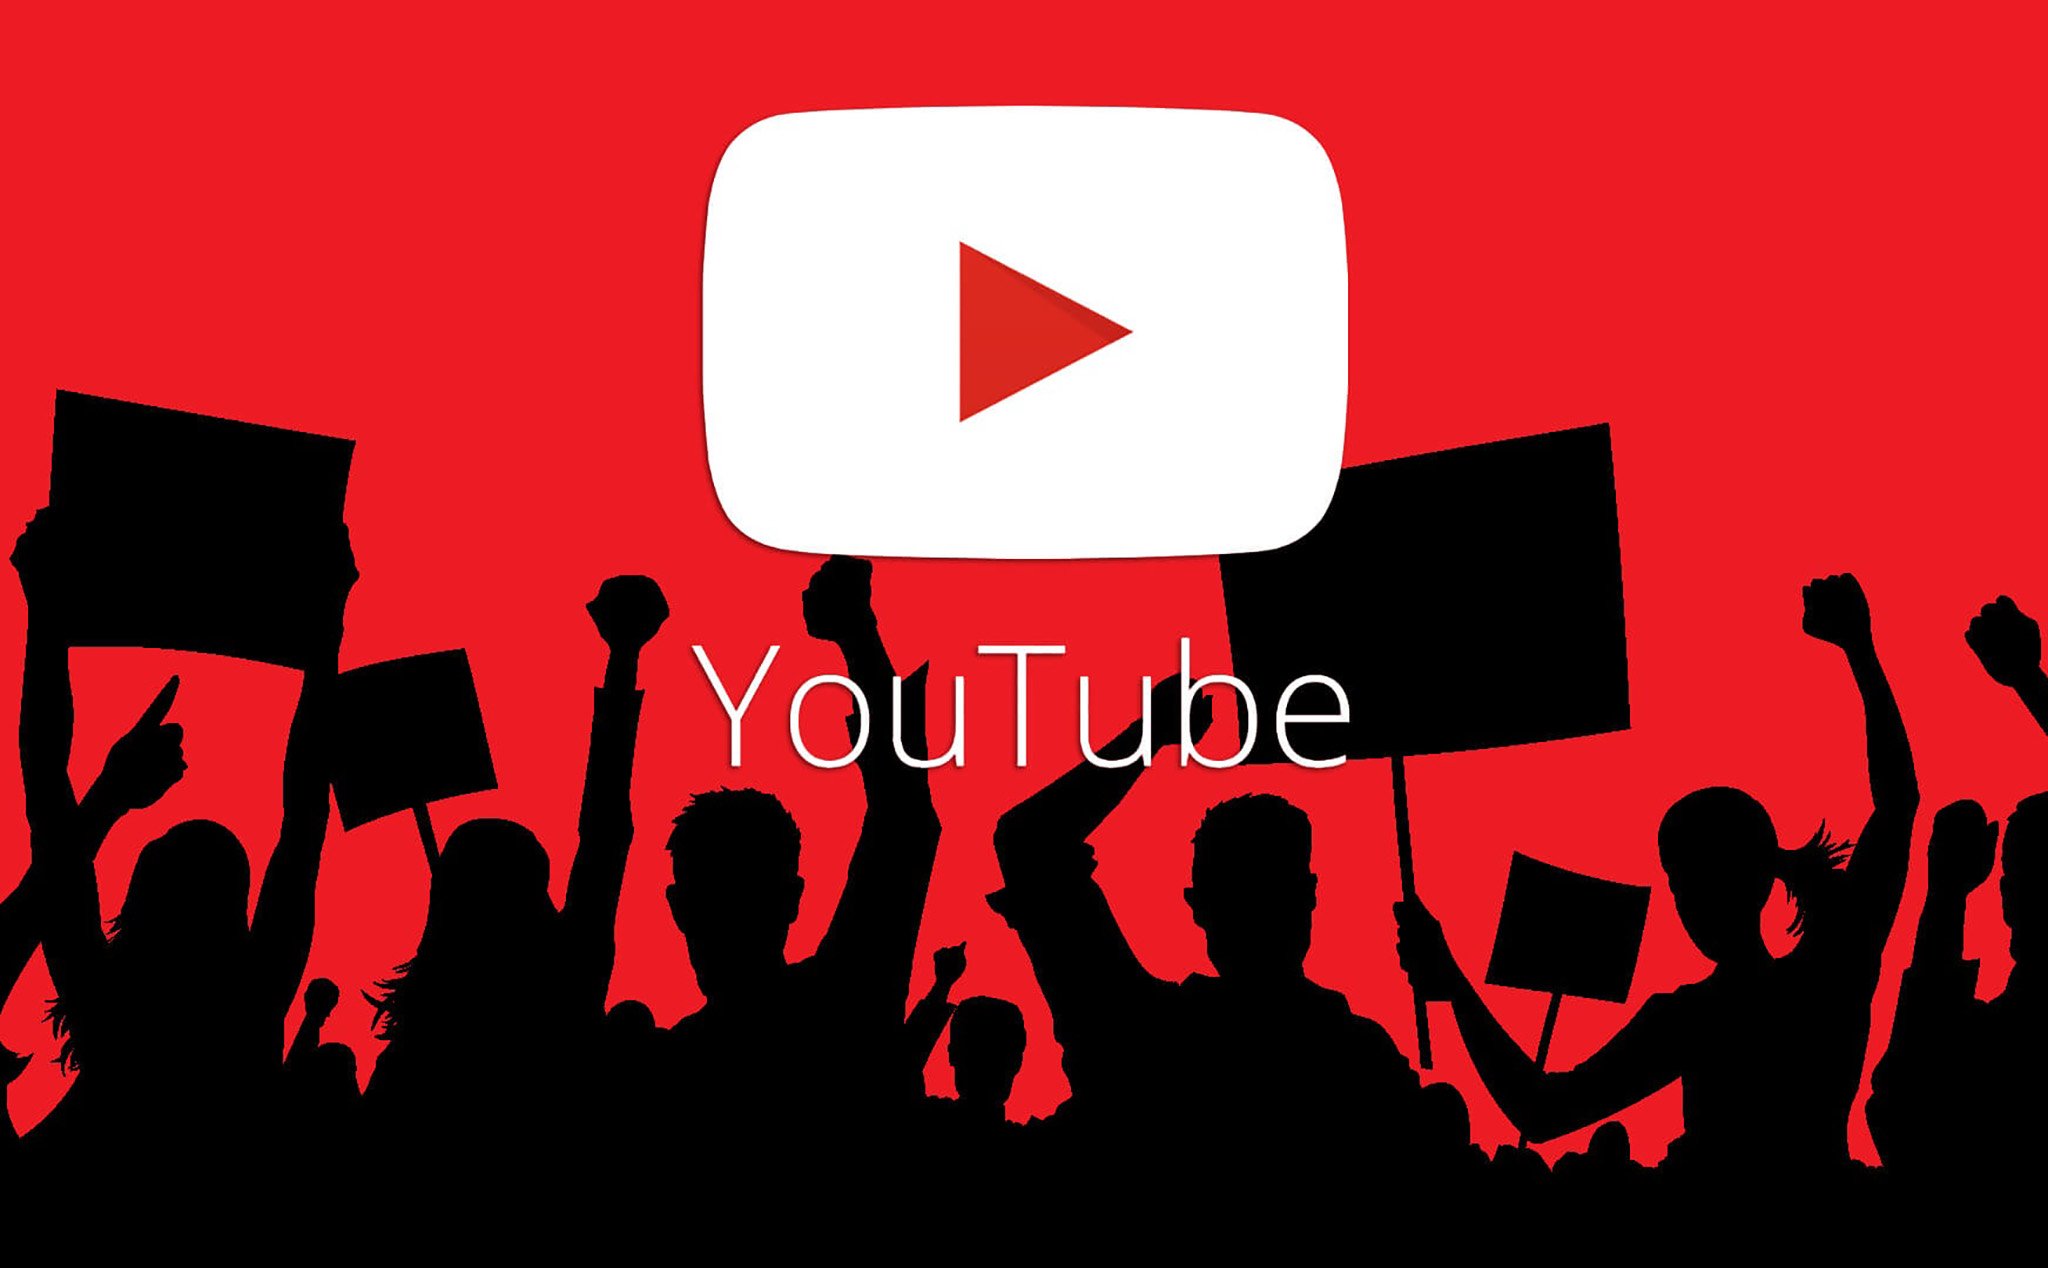 Youtuber là gì? 4 cách kiếm tiền từ youtube bạn nên biết